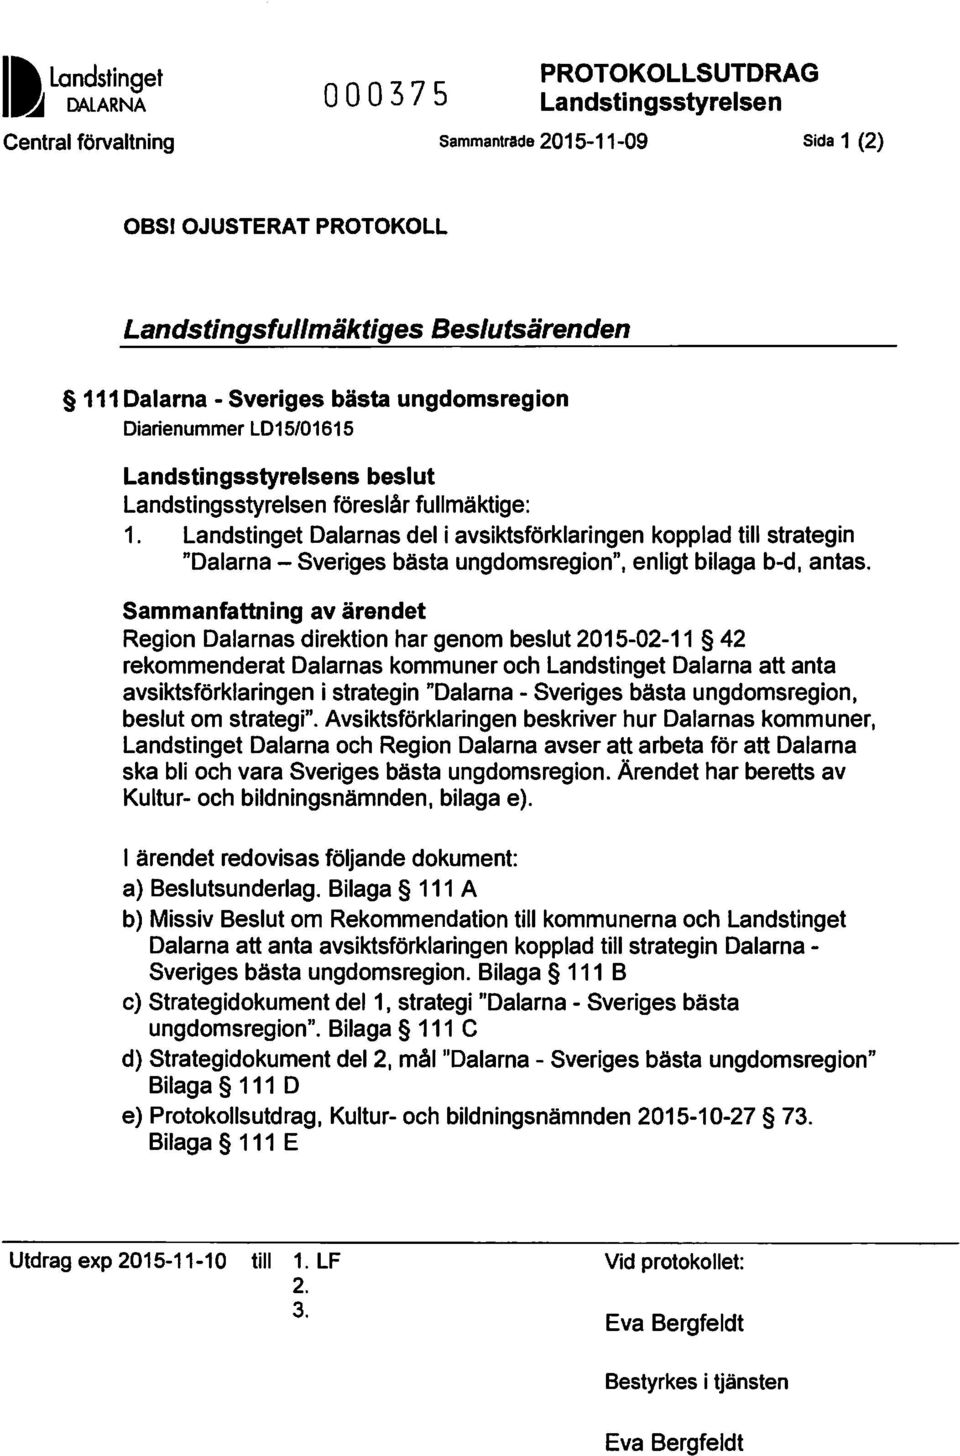 Landstinget Dalarnas del i avsiktsförklaringen kopplad till strategin "Dalarna -Sveriges bästa ungdomsregion", enligt bilaga b-d, antas.